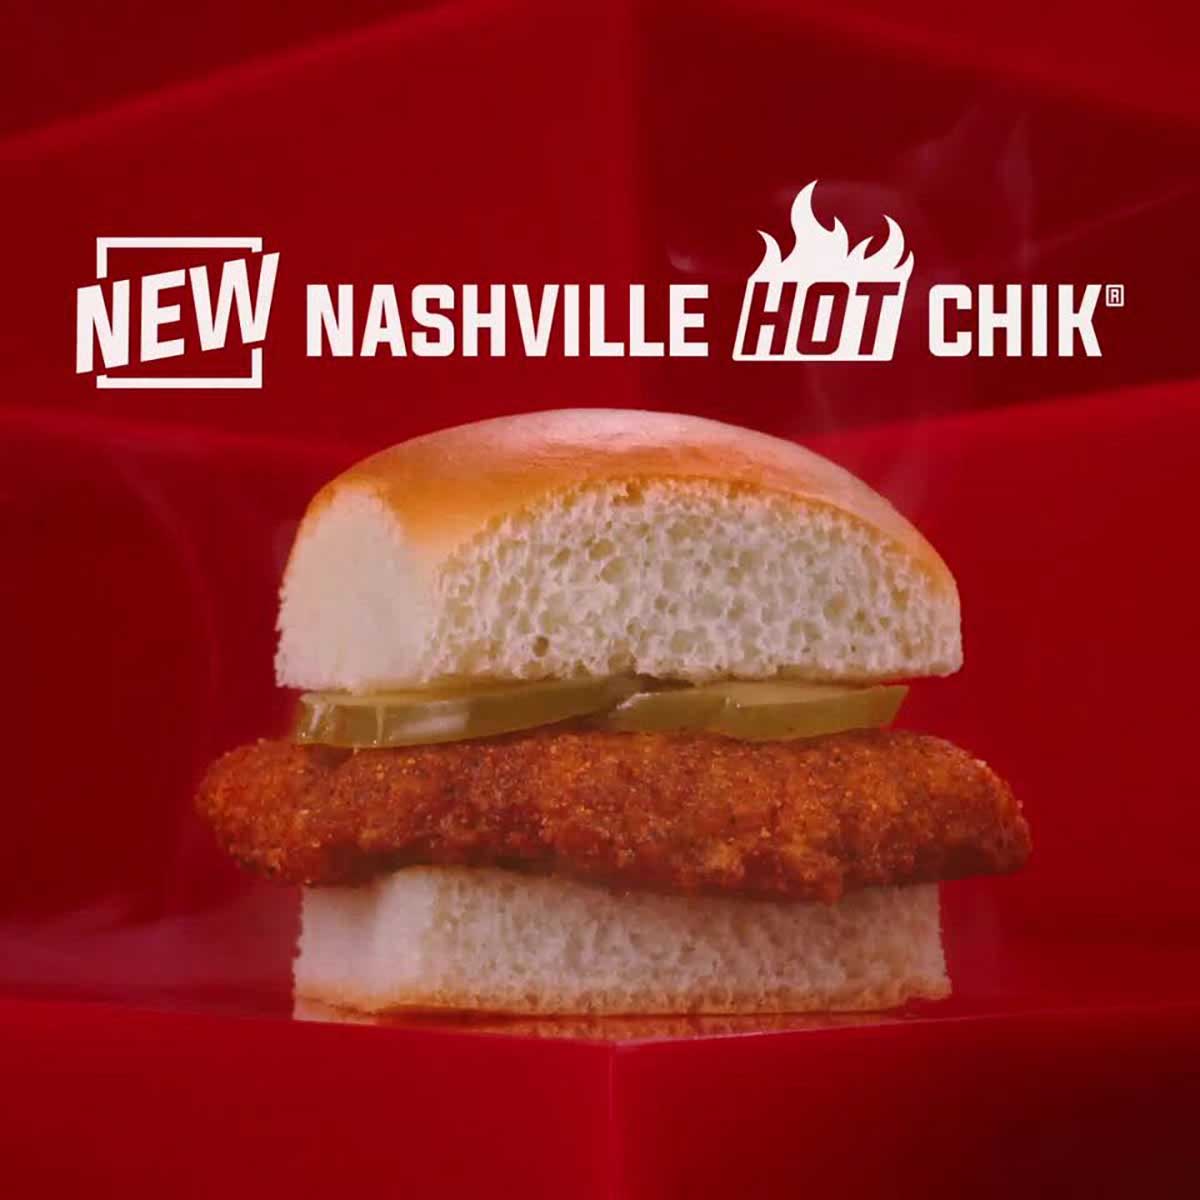 Krystal spices up menu with Nashville Hot Chik LTO